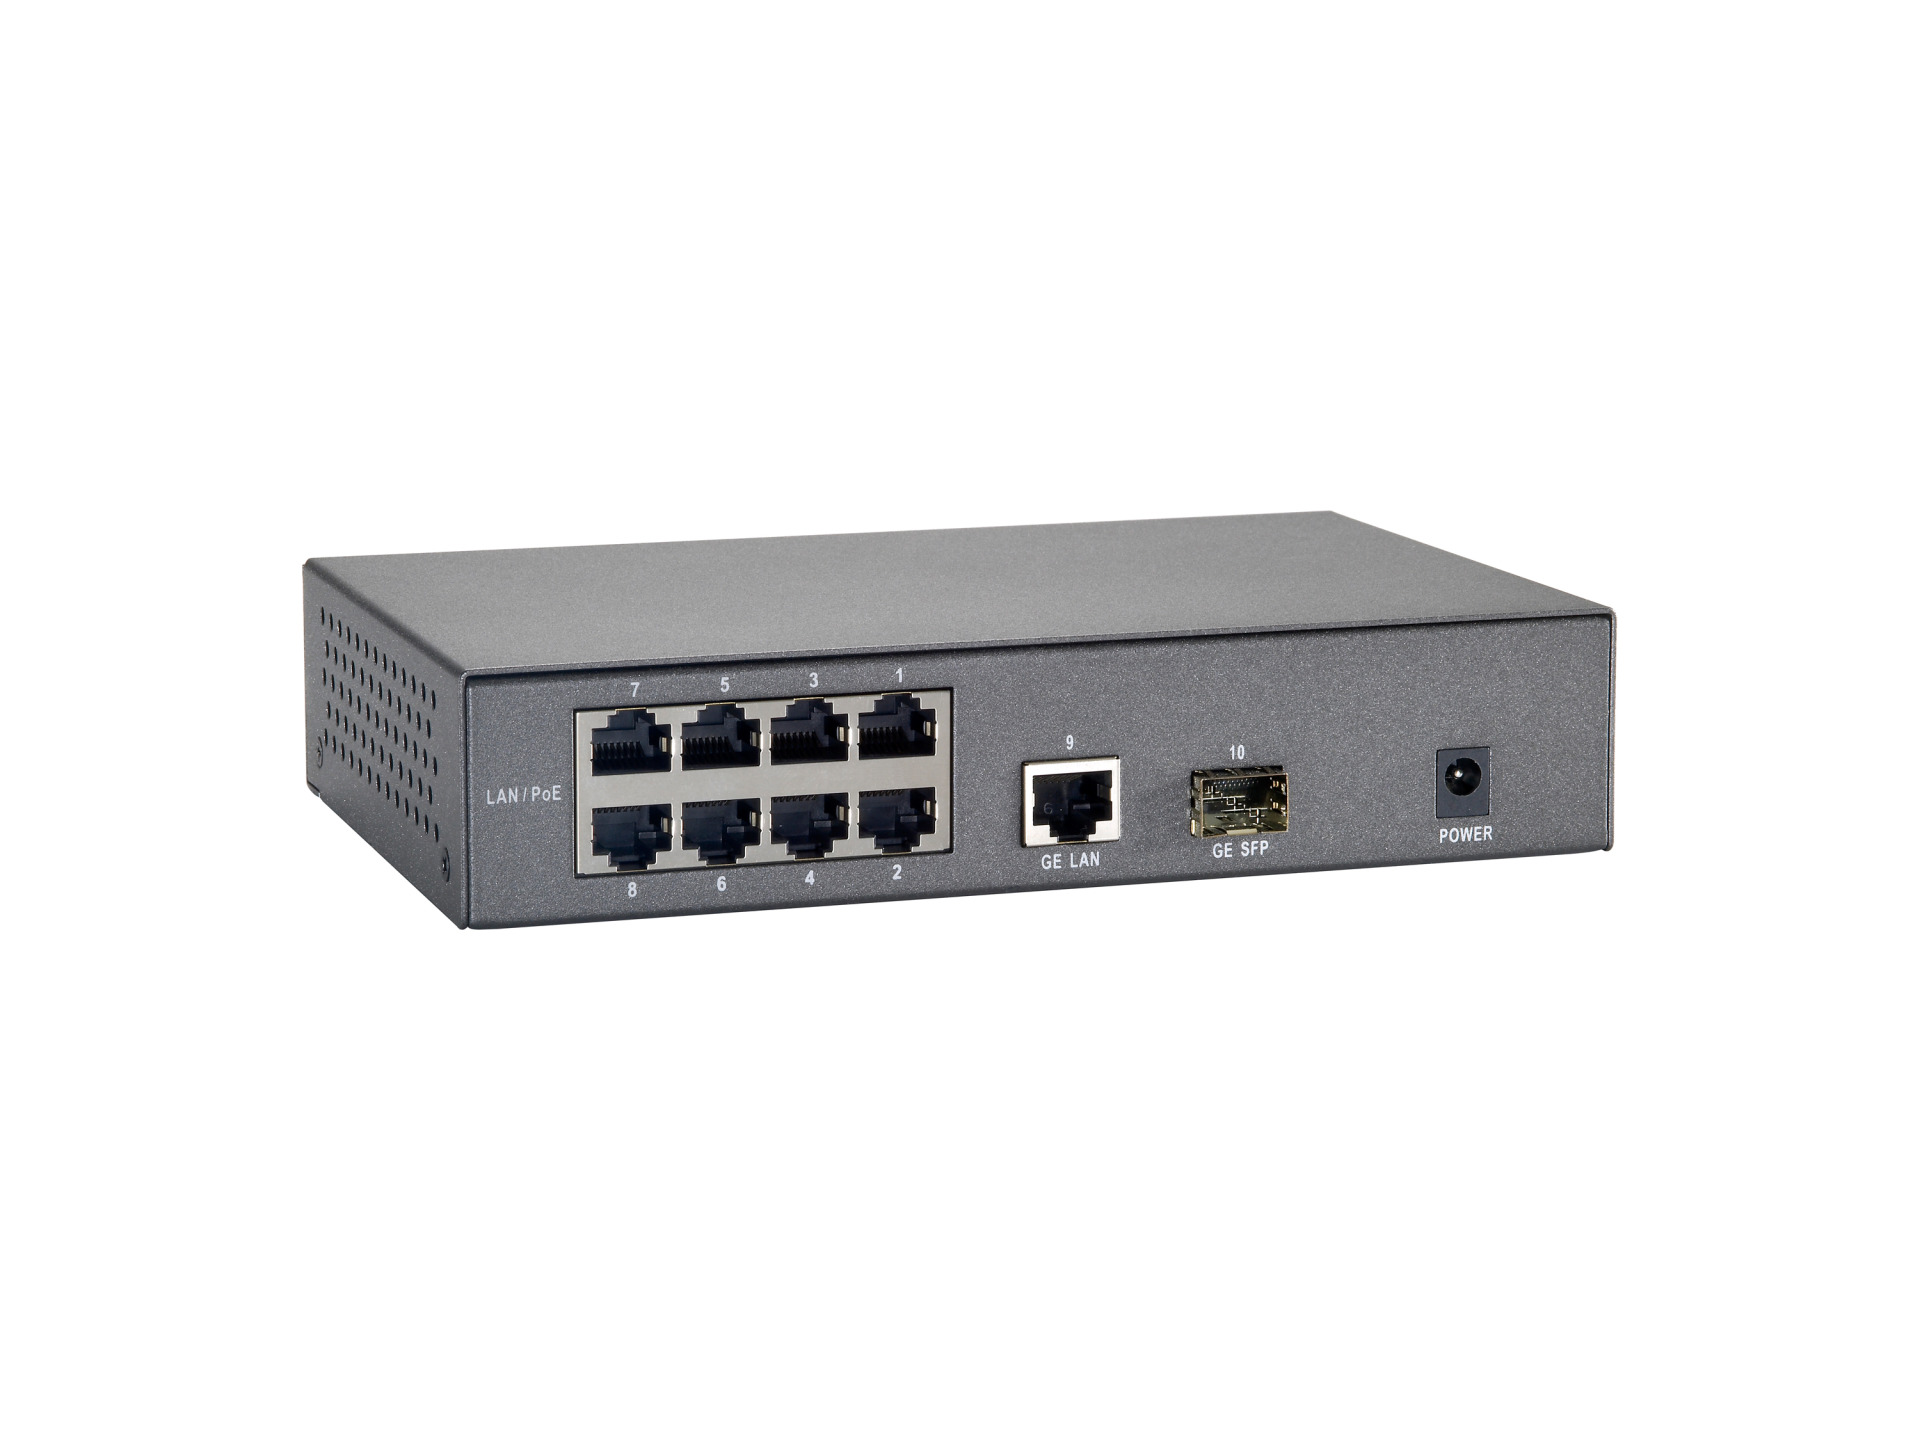 10-Port Fast Ethernet PoE+ Switch, 8x FE PoE+, + 1x GE RJ45, +1x GE SFP (65W)